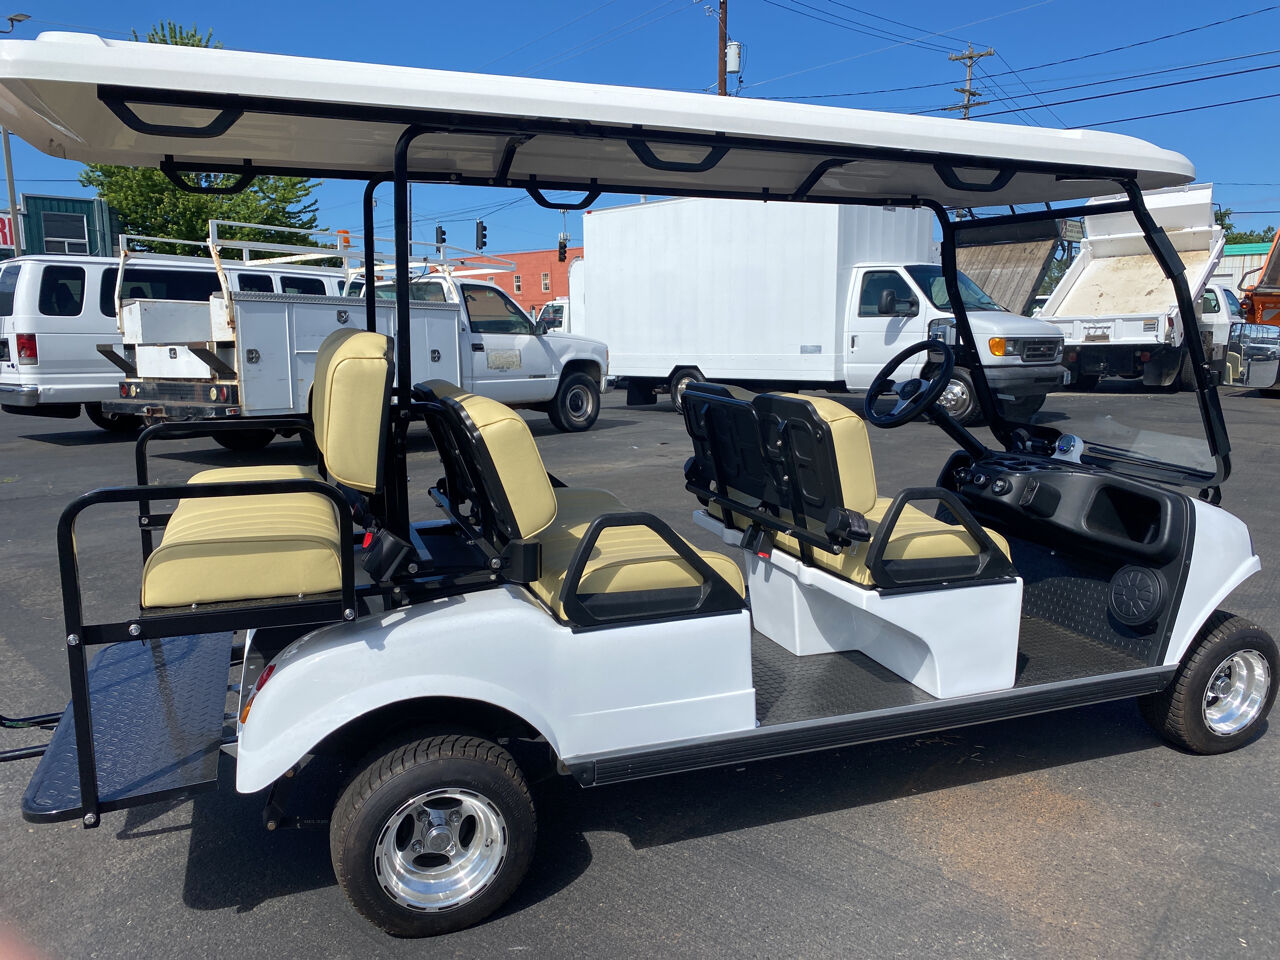 2020-hdk-golf-cart-6-person